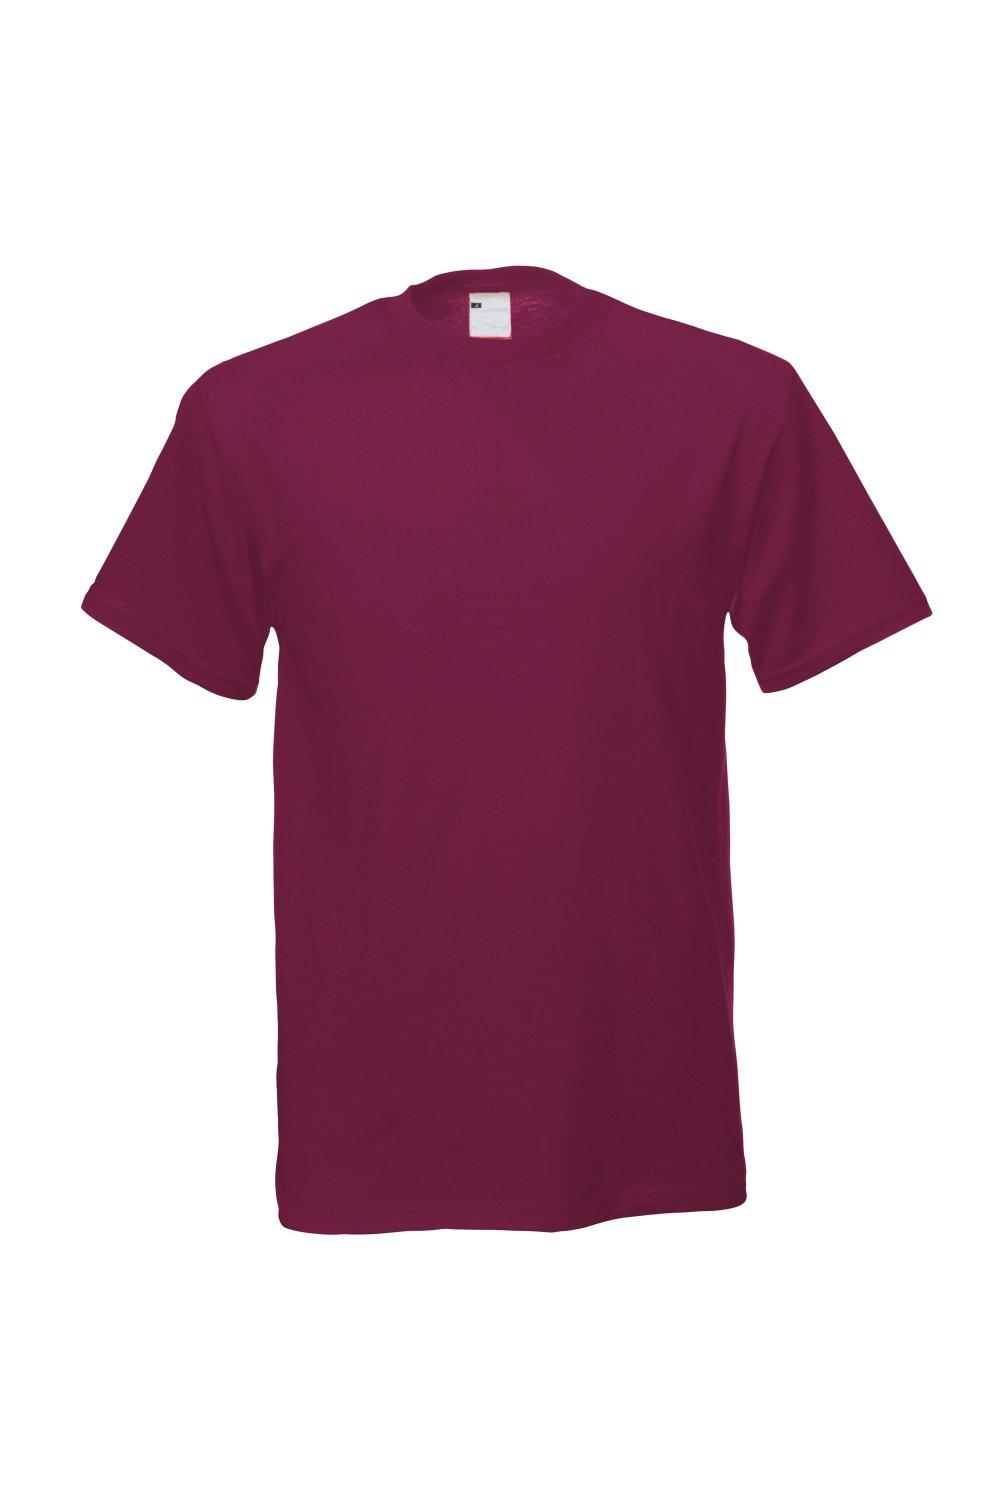 Повседневная футболка с коротким рукавом Universal Textiles, красный мужская футболка мороженое арбуз киви 2xl серый меланж